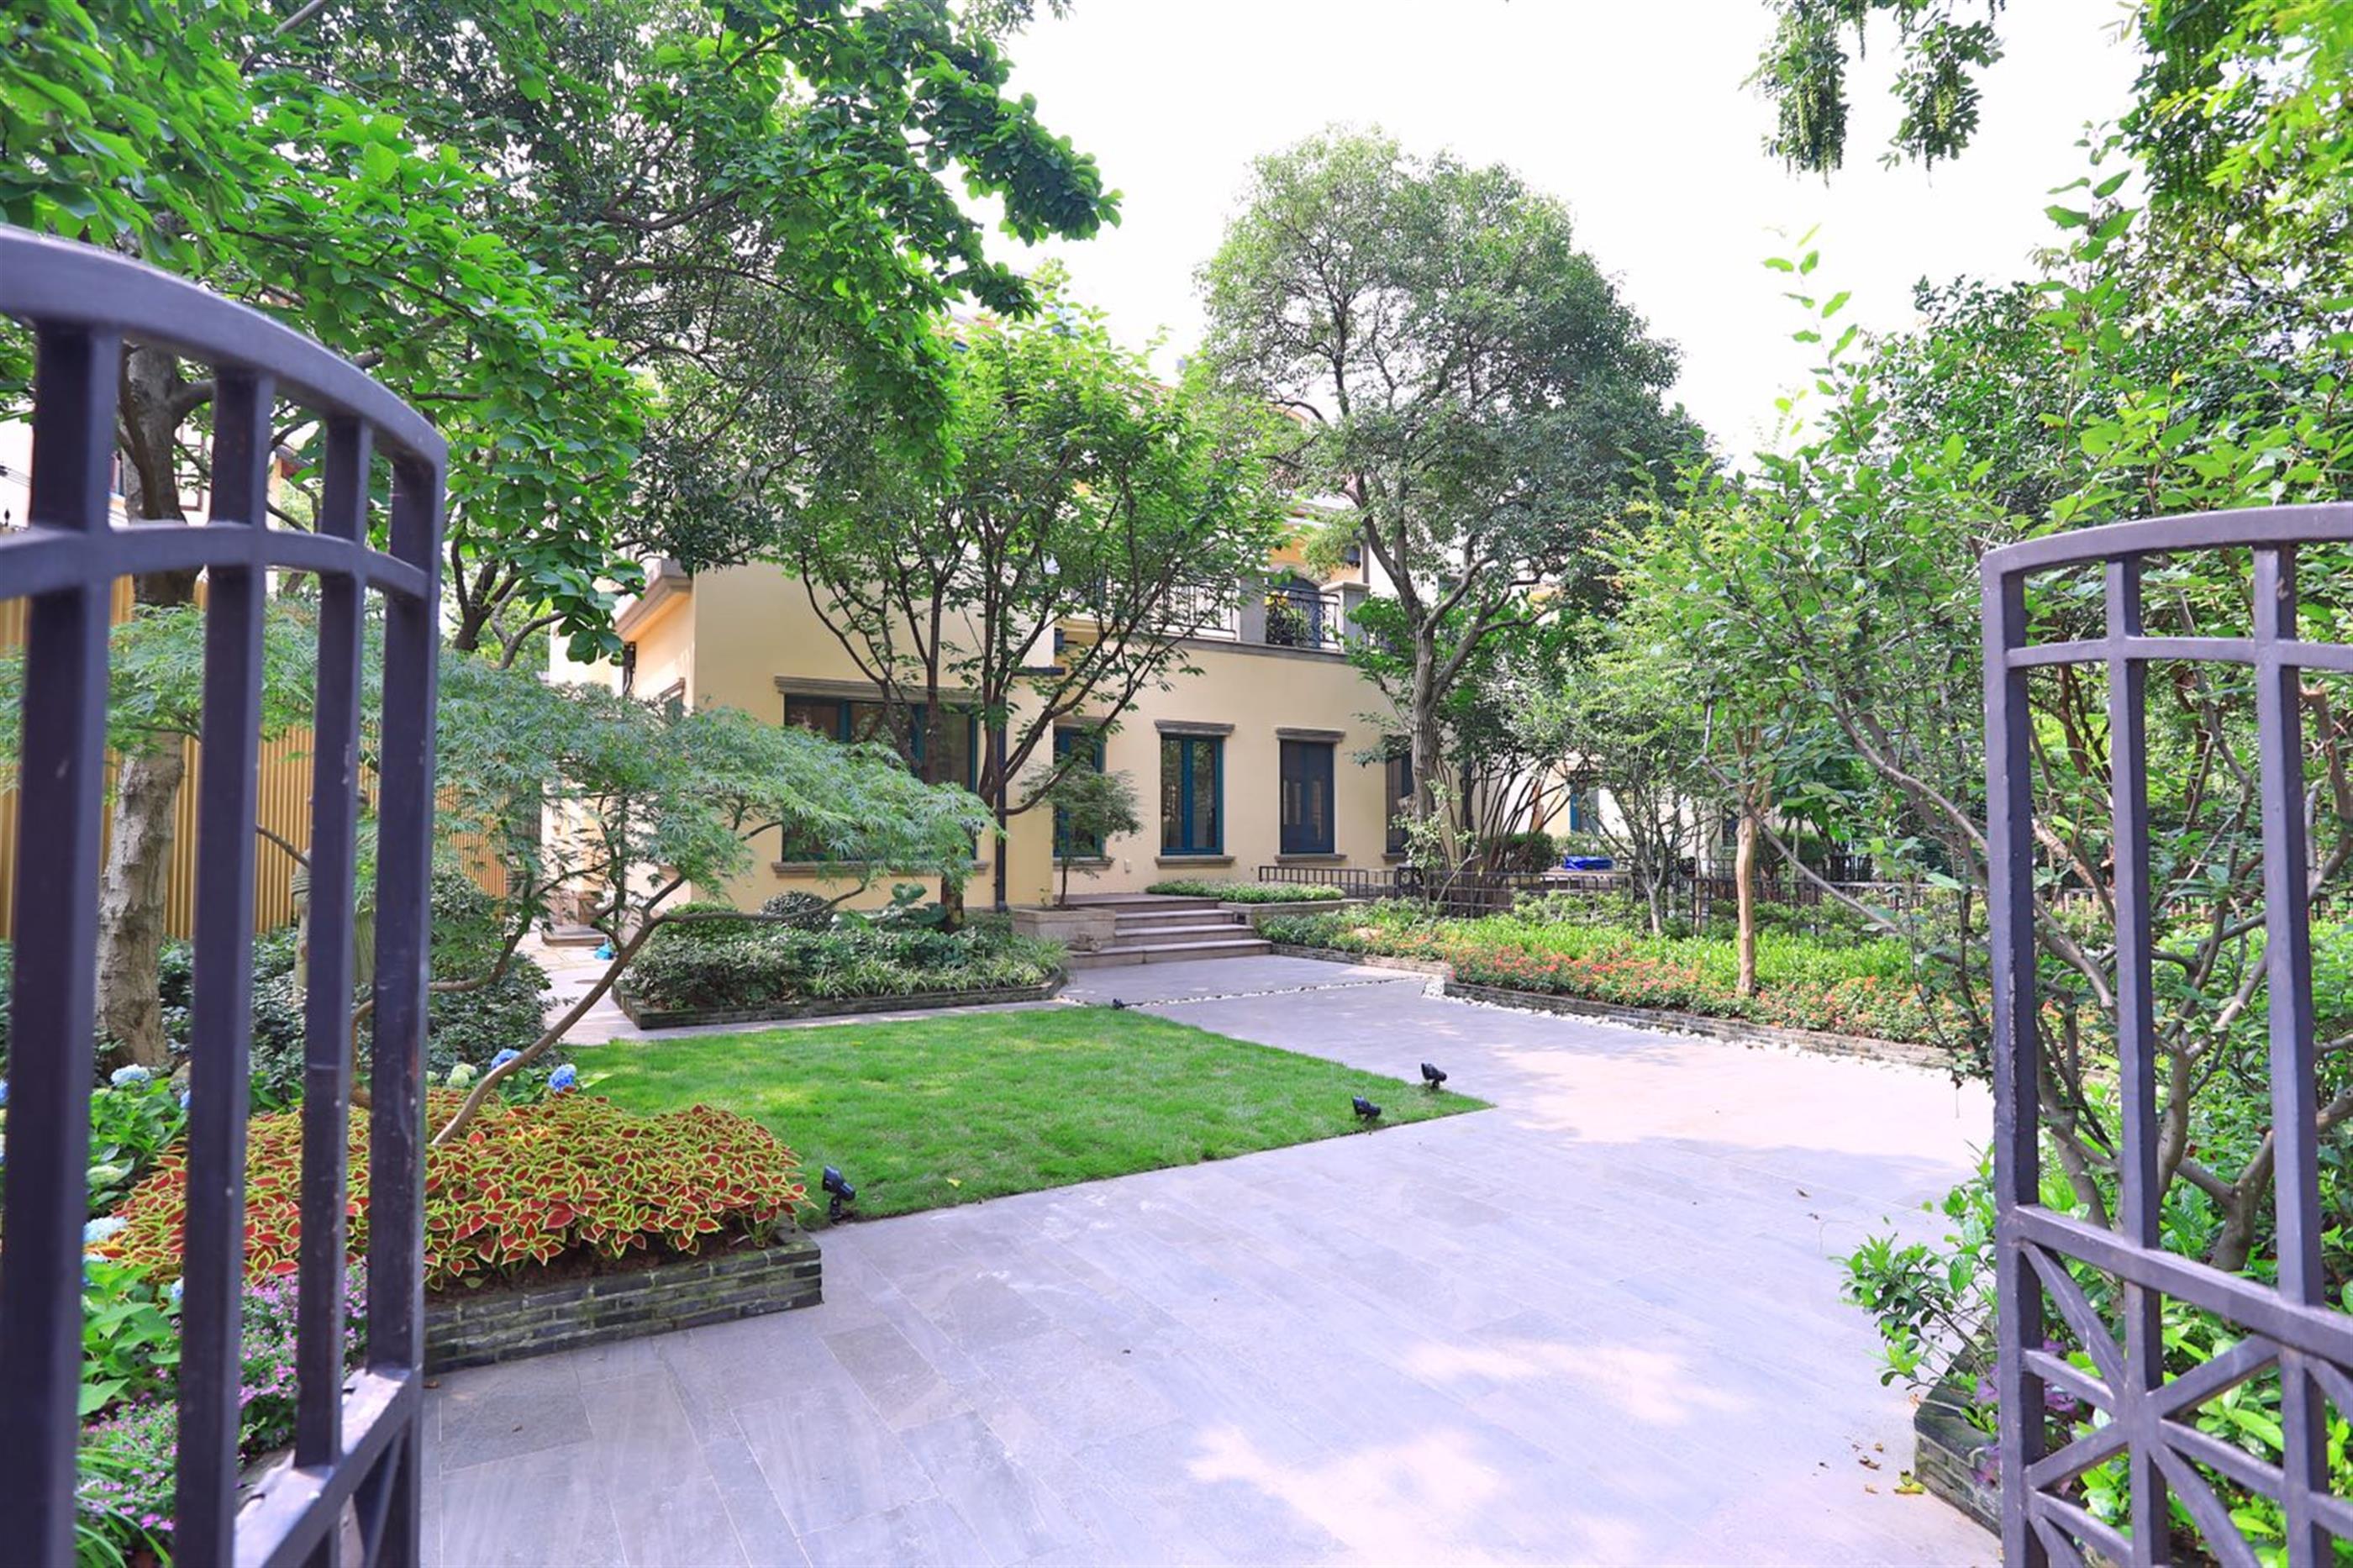 driveway Ultra-lux 3.5F, 3BR, 370sqm FFC Villa w Big Garden nr LN 1/10 for Rent in Shanghai